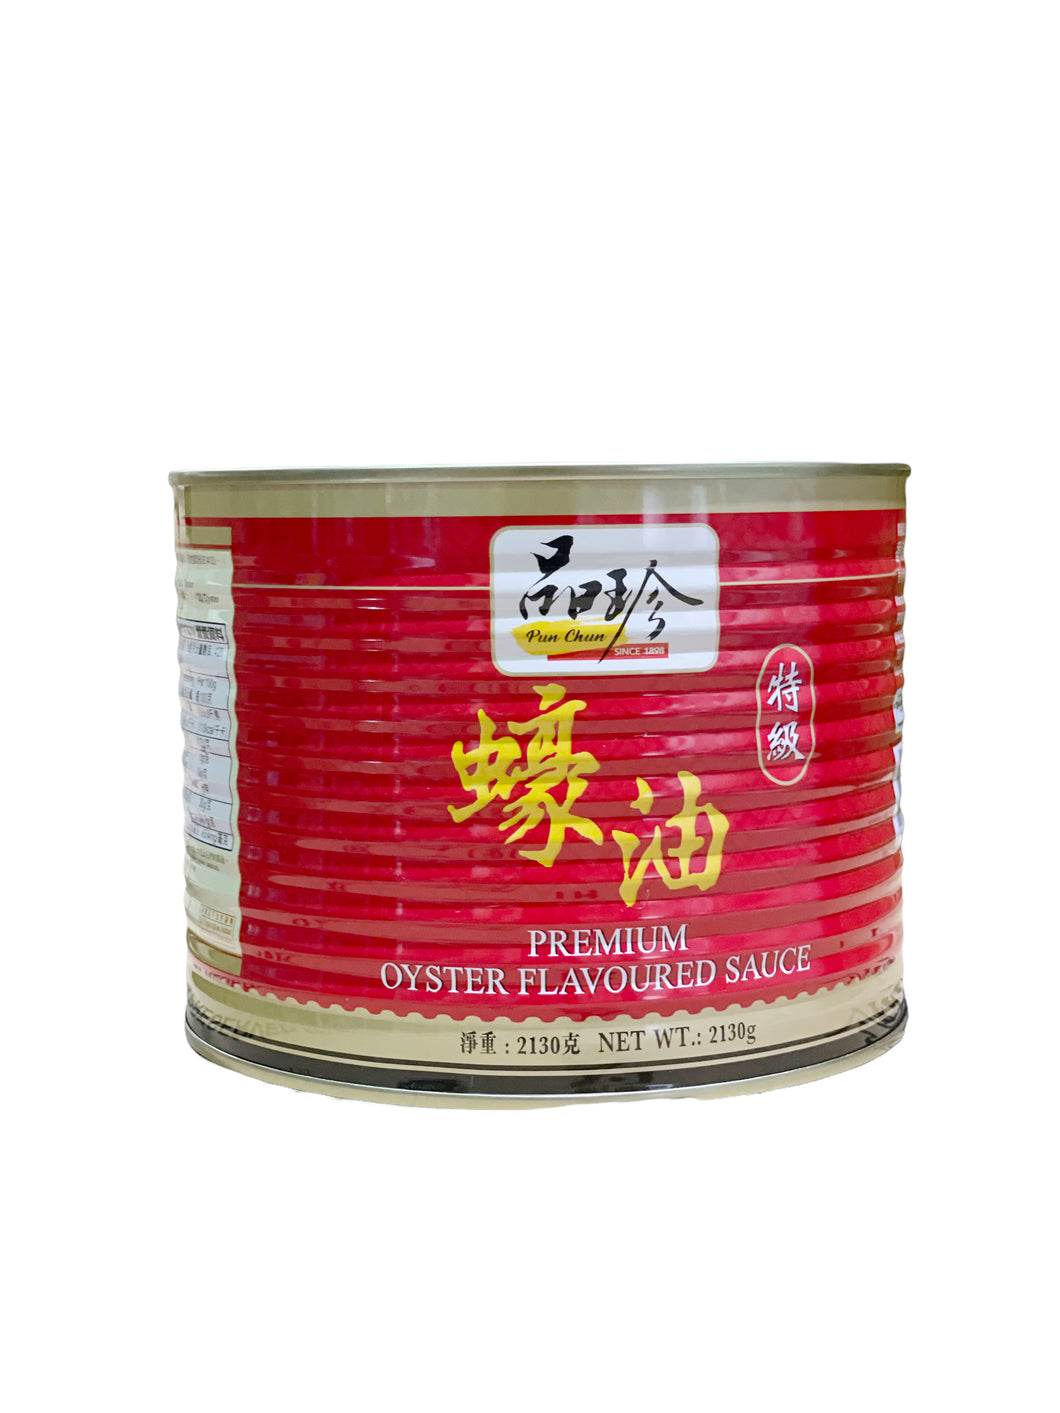 Pun Chun Oyster Sauce 品珍特级蠔油 2130g 买十送一/BUY 10 GET 1 FREE